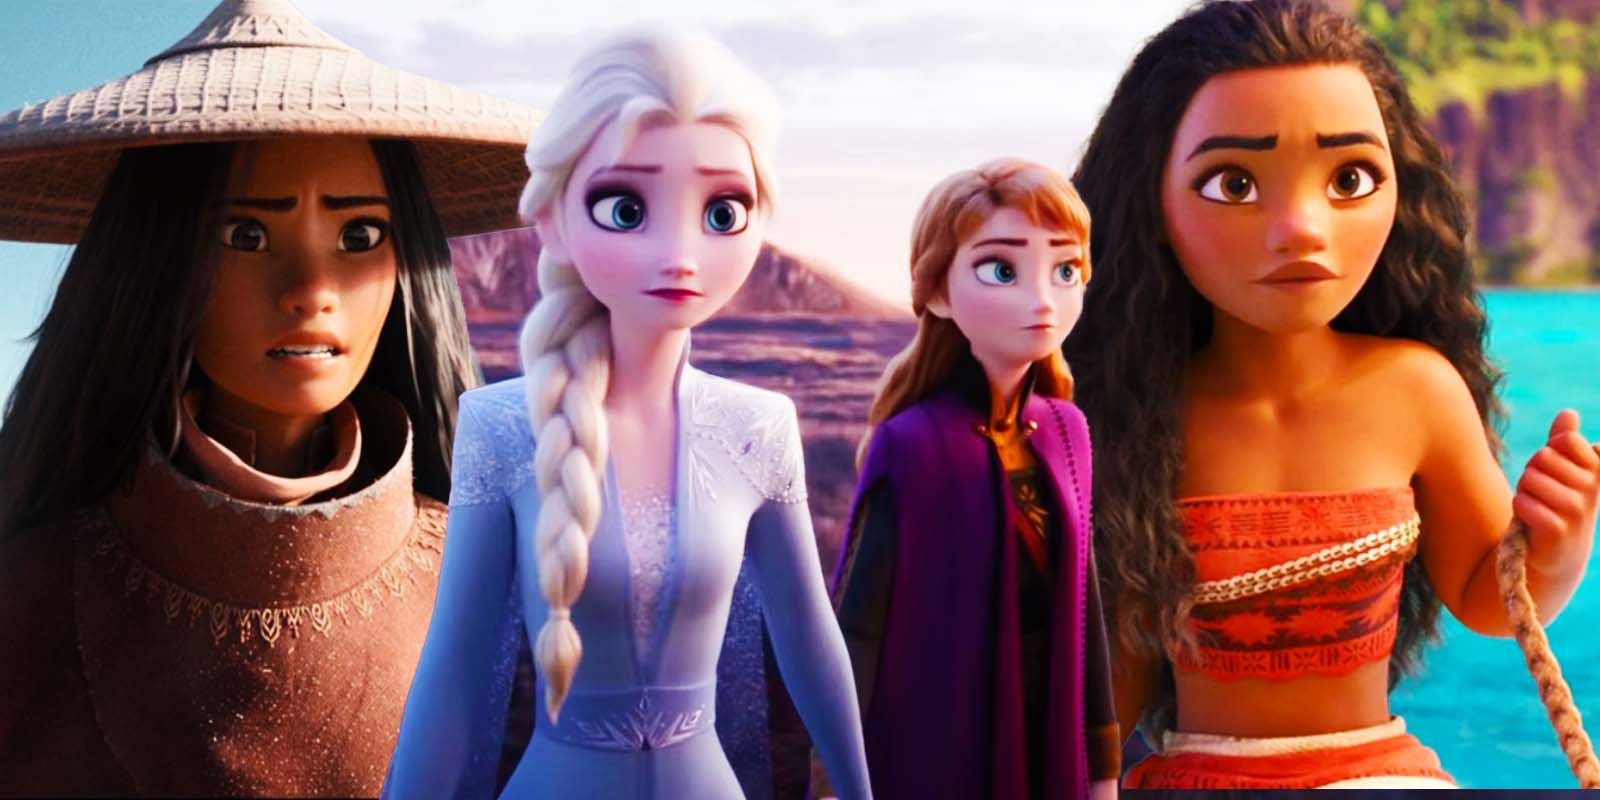 Raya as Raya and the Last Dragon, Elsa and Anna in Disney's Frozen II, and Moana in Moana